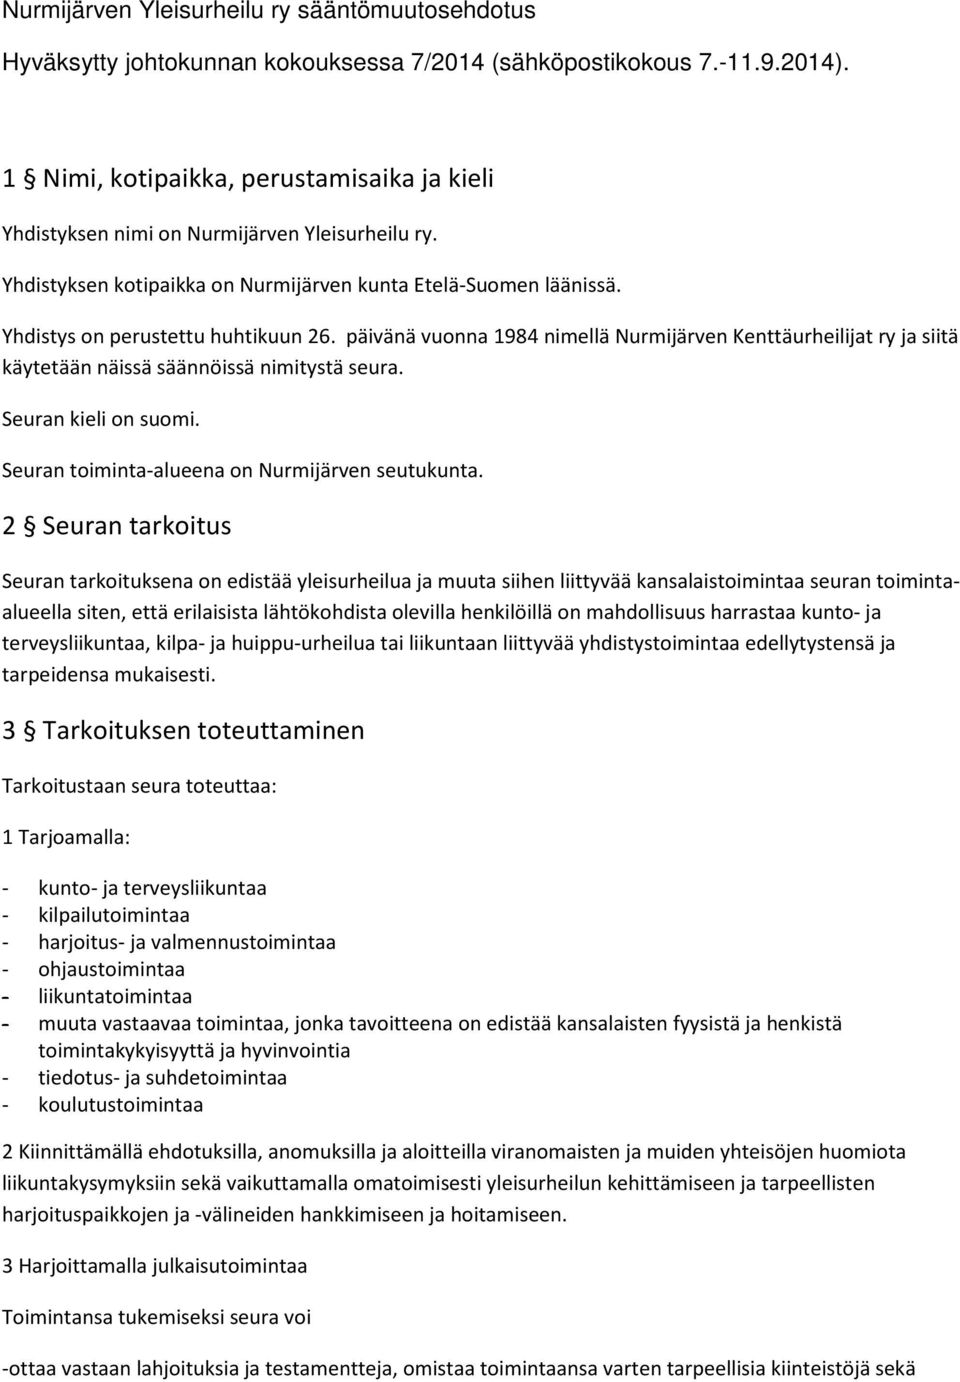 päivänä vuonna 1984 nimellä Nurmijärven Kenttäurheilijat ry ja siitä käytetään näissä säännöissä nimitystä seura. Seuran kieli on suomi. Seuran toiminta-alueena on Nurmijärven seutukunta.